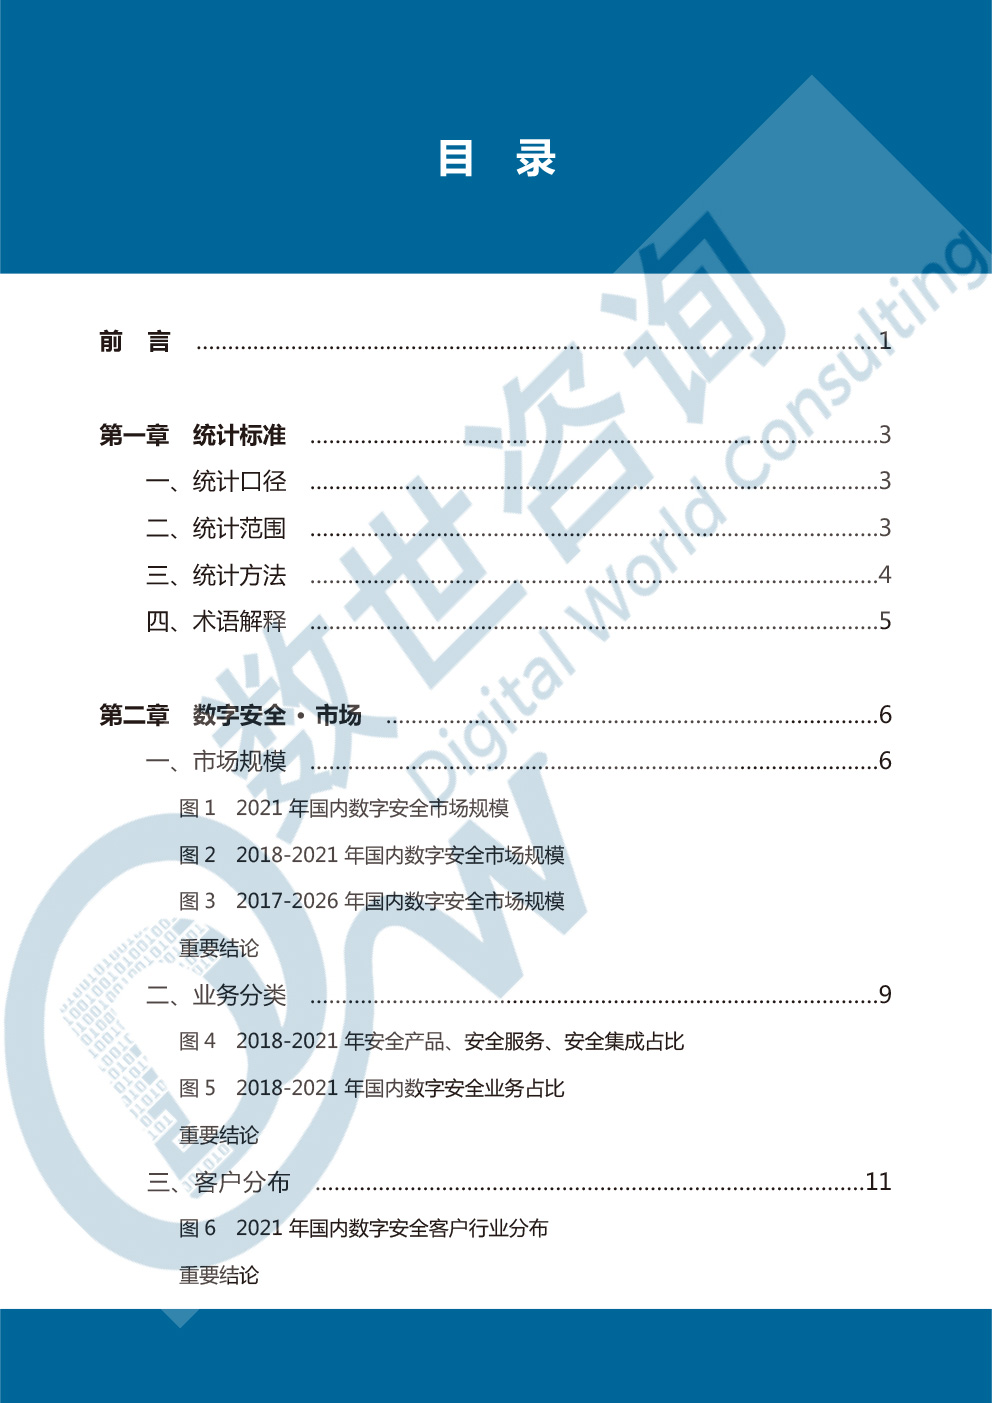 中国数字安全产业统计与分析报告(2022)图-4.jpg